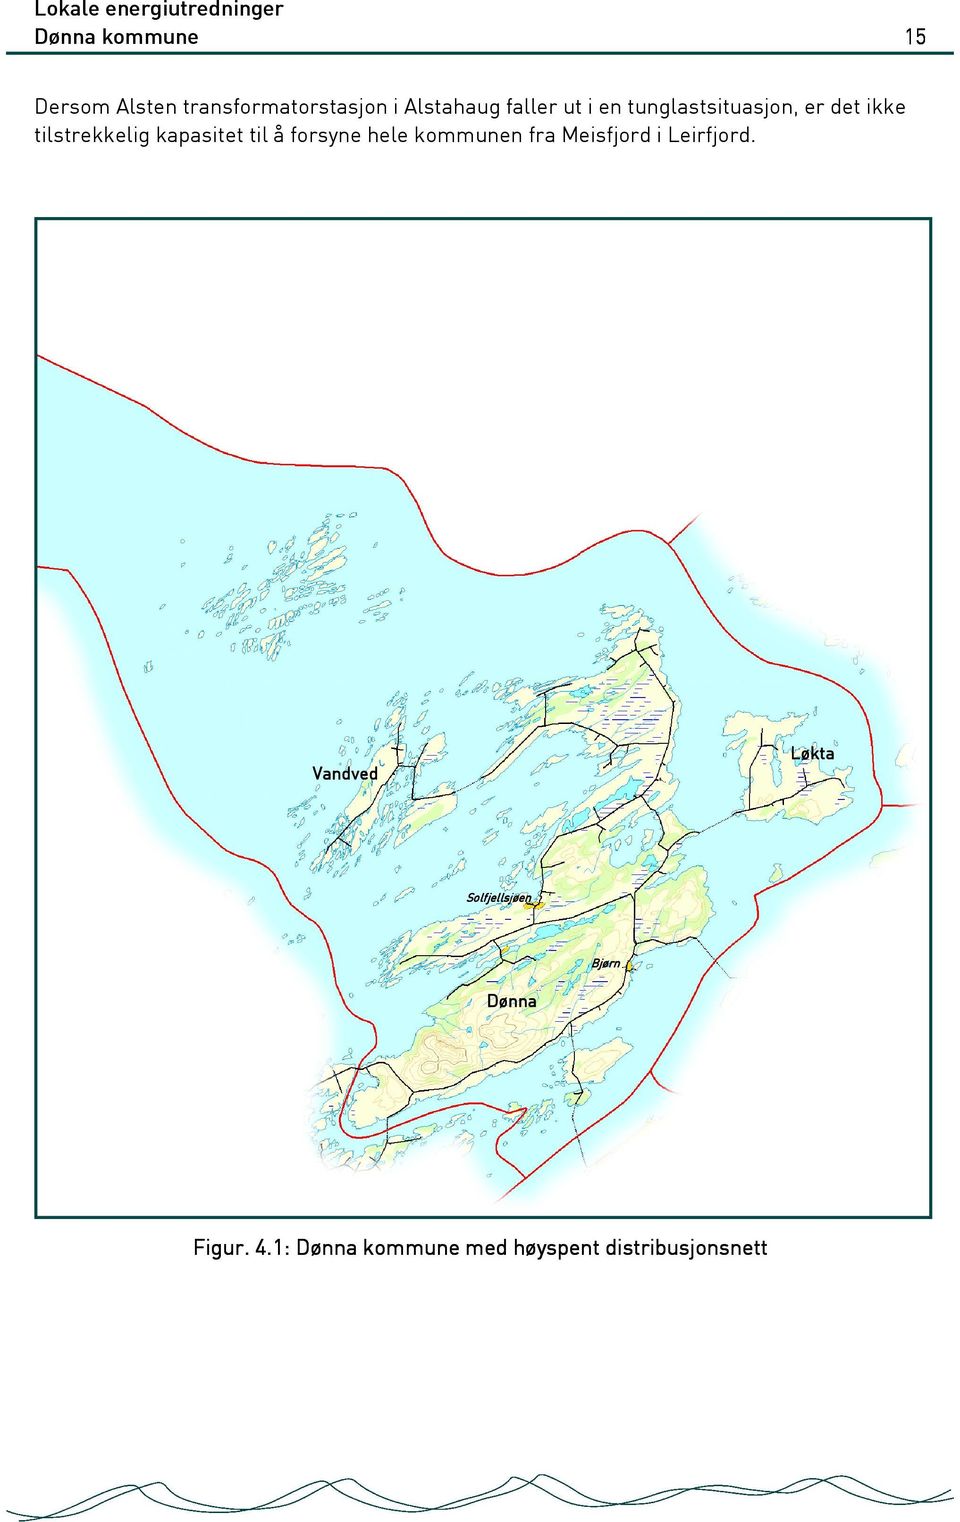 forsyne hele kommunen fra Meisfjord i Leirfjord.